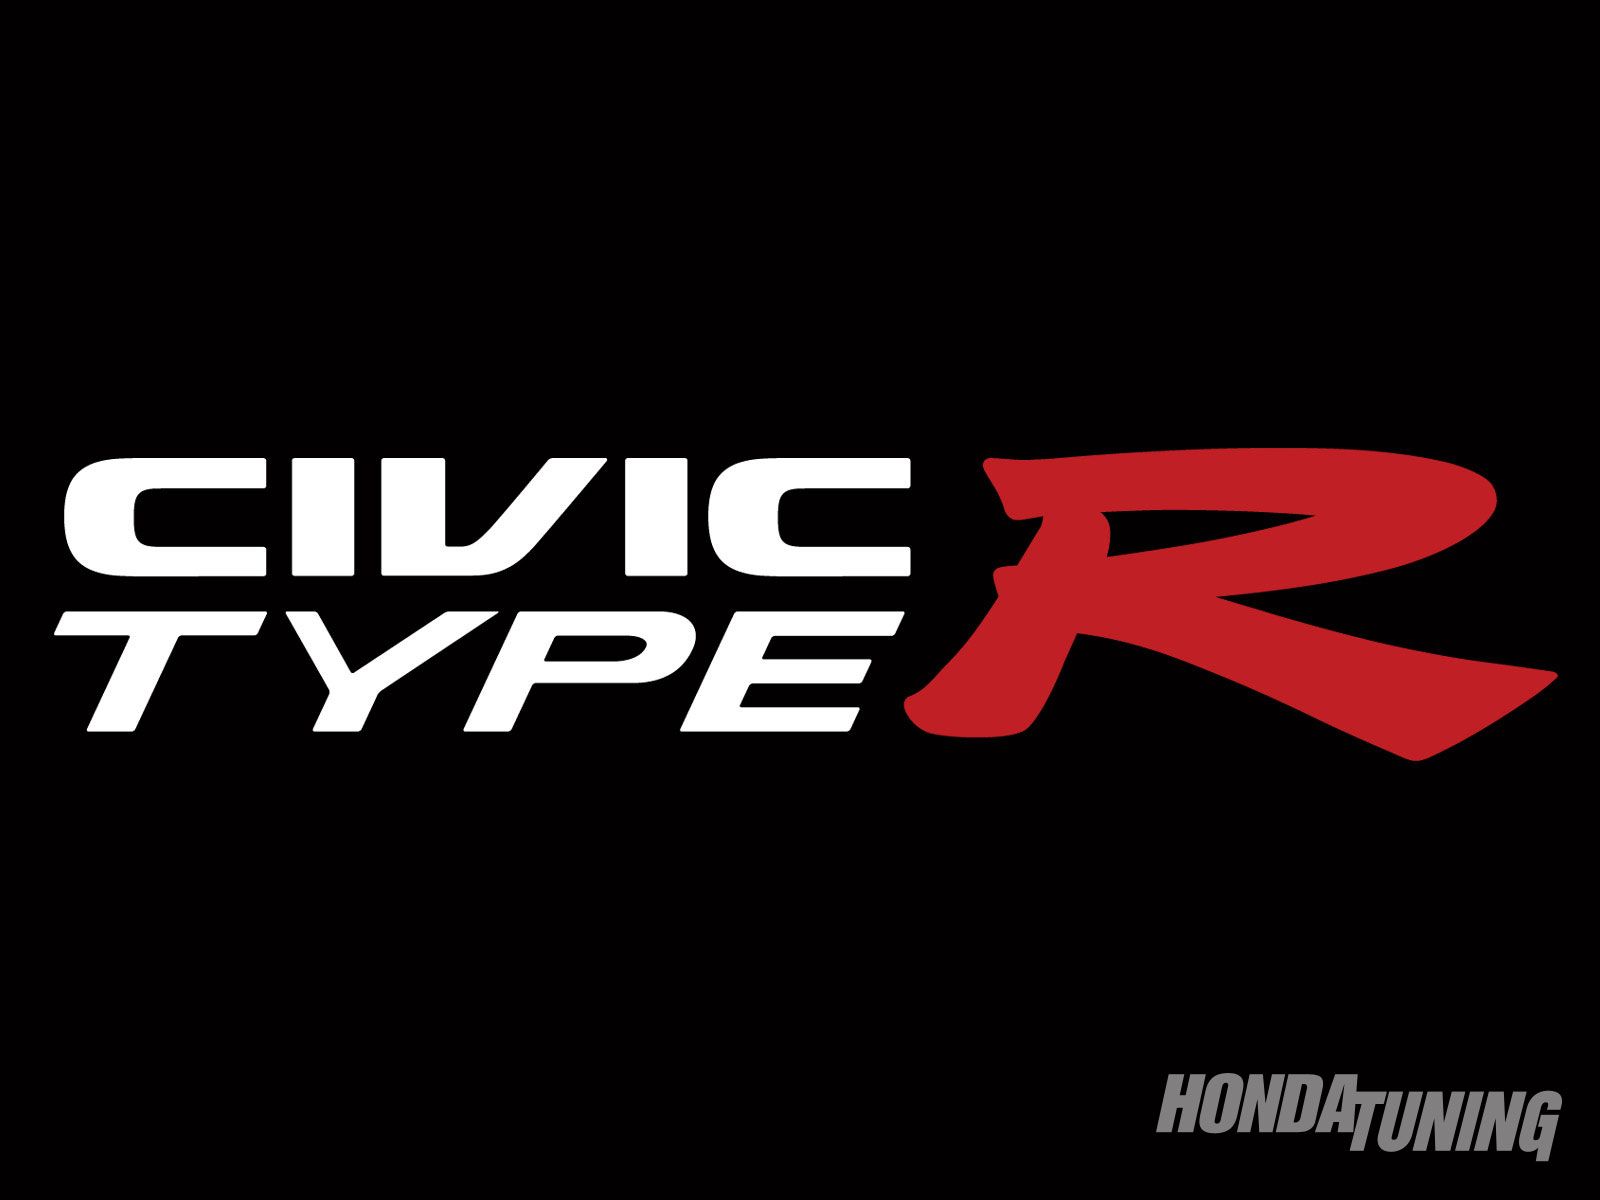 Honda civic Logos